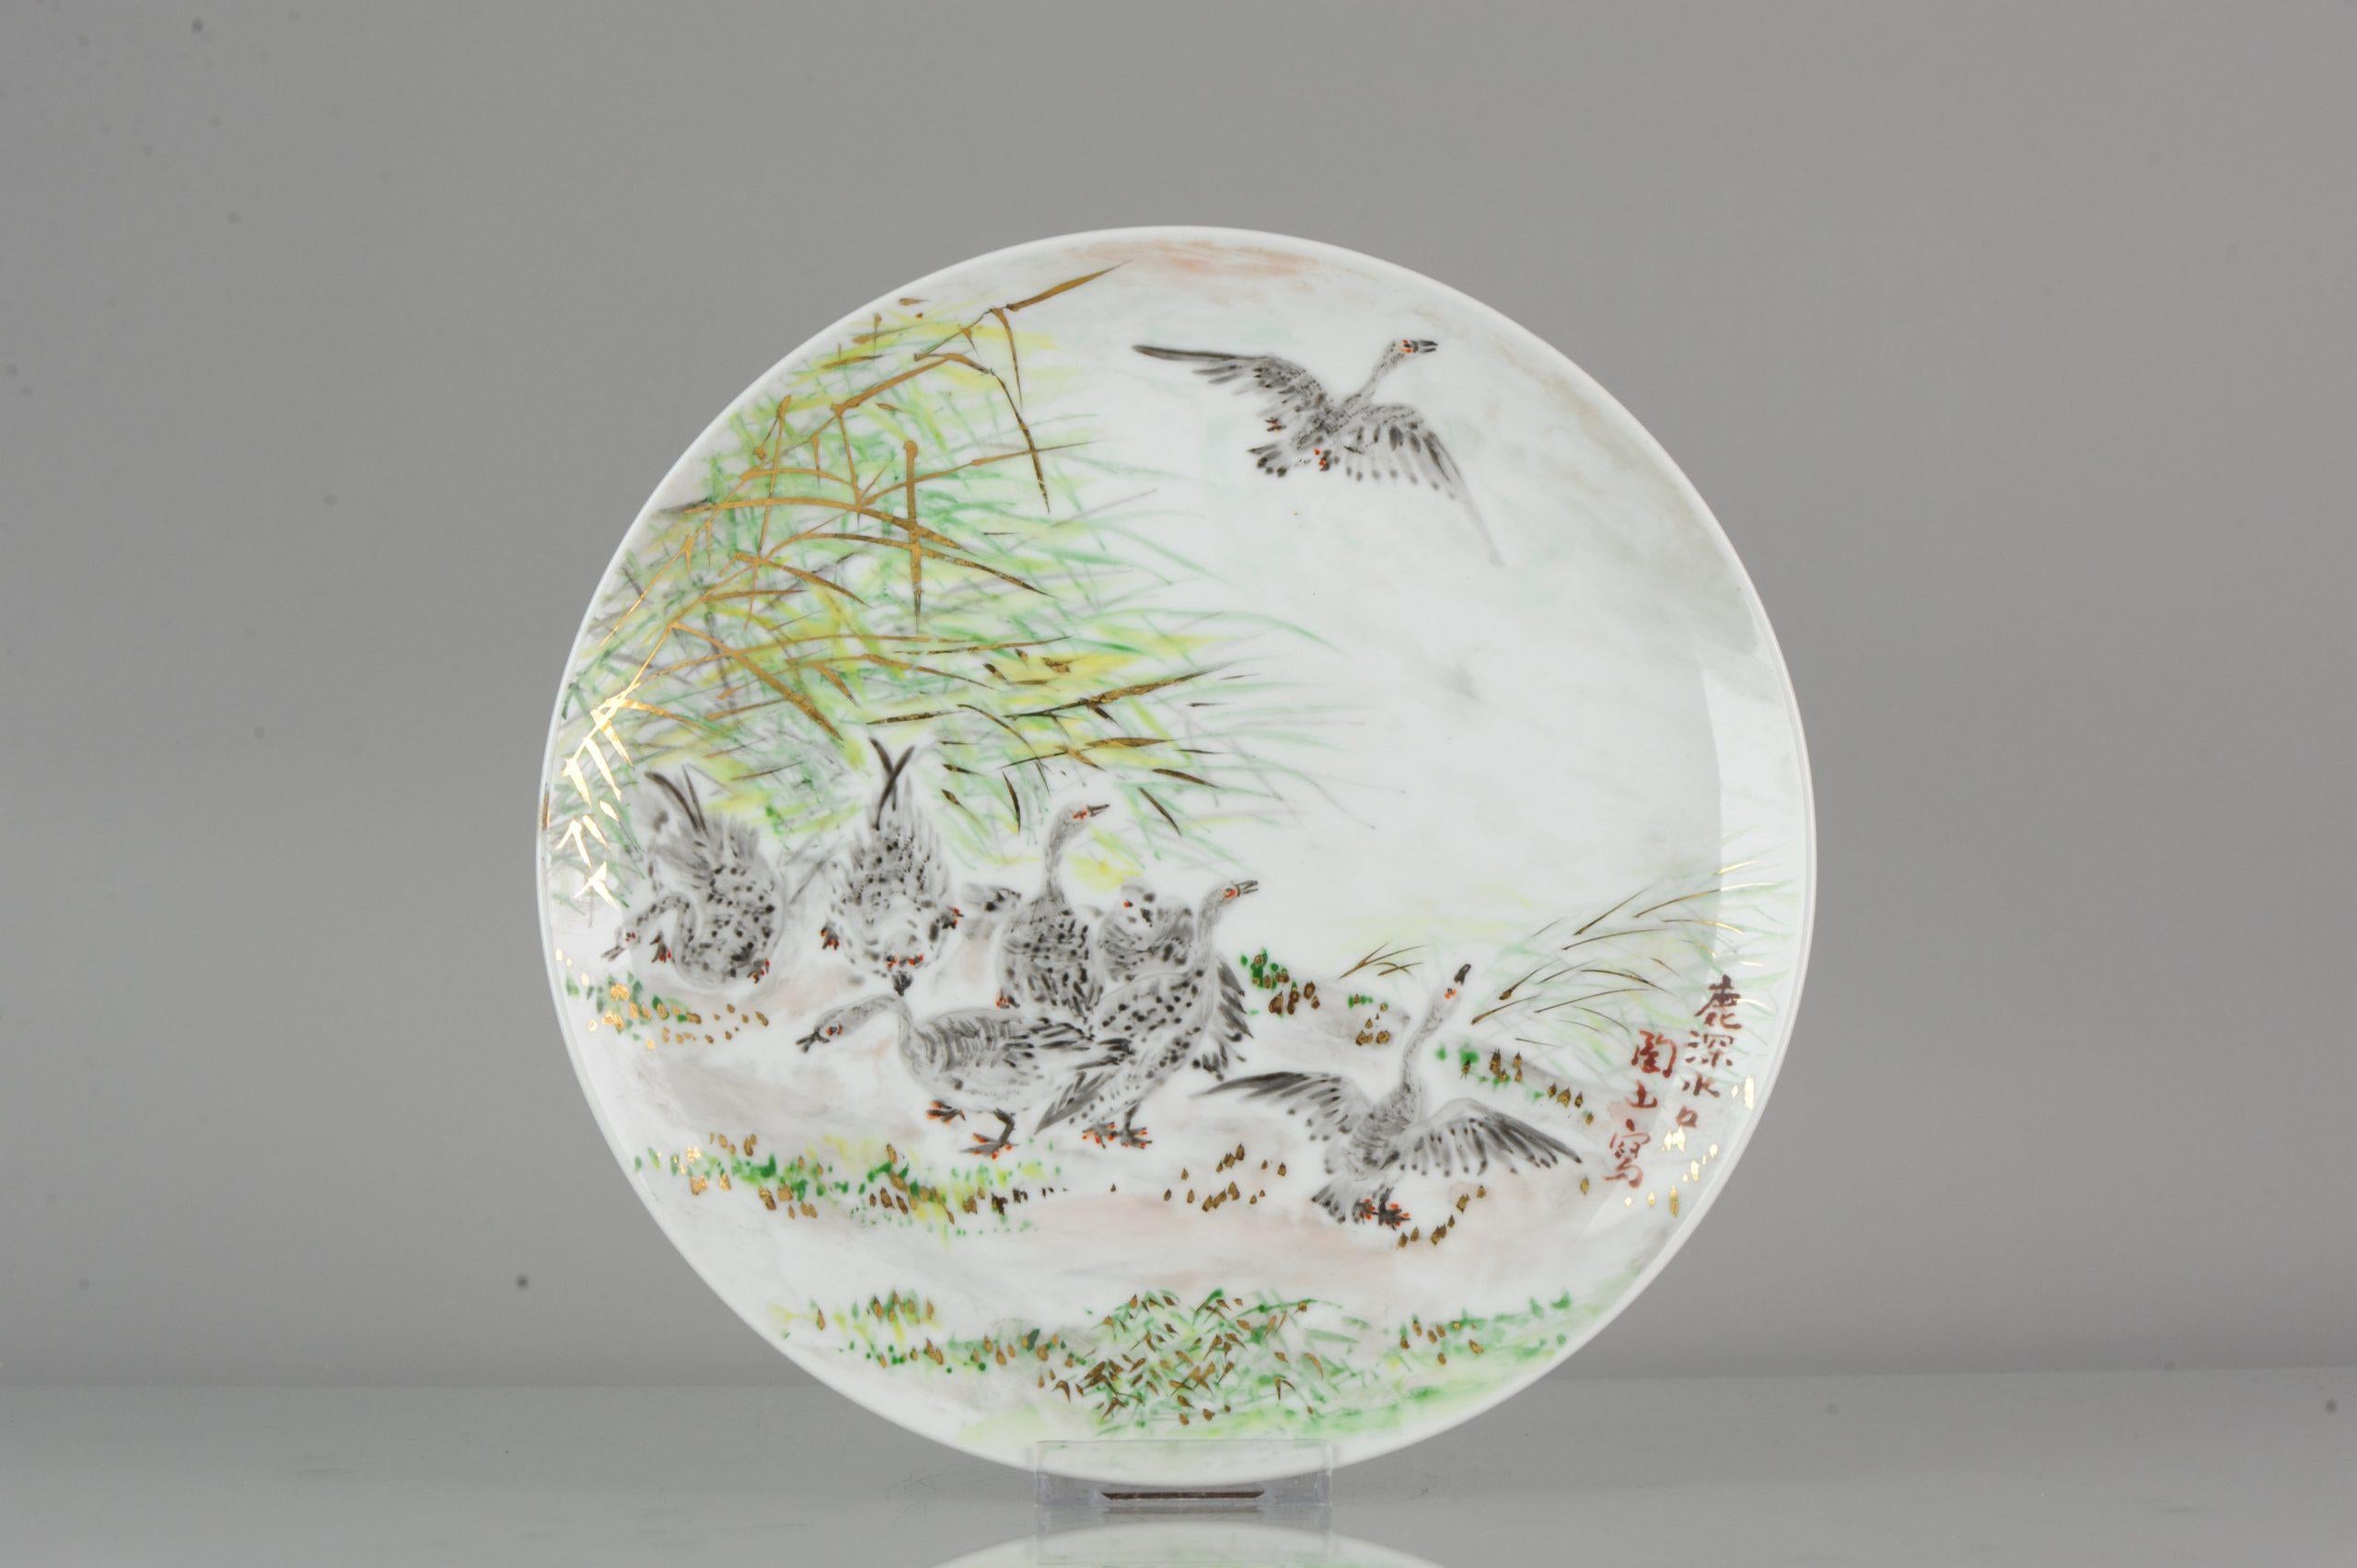 Une assiette en porcelaine japonaise très joliment décorée, couleurs étonnantes. Marqué à la base.

17-12-19-1-16

 

 

 

 
Condit
Etat général parfait ; taille : 262 x 23mm
Période
XXIe siècle
20ème siècle.